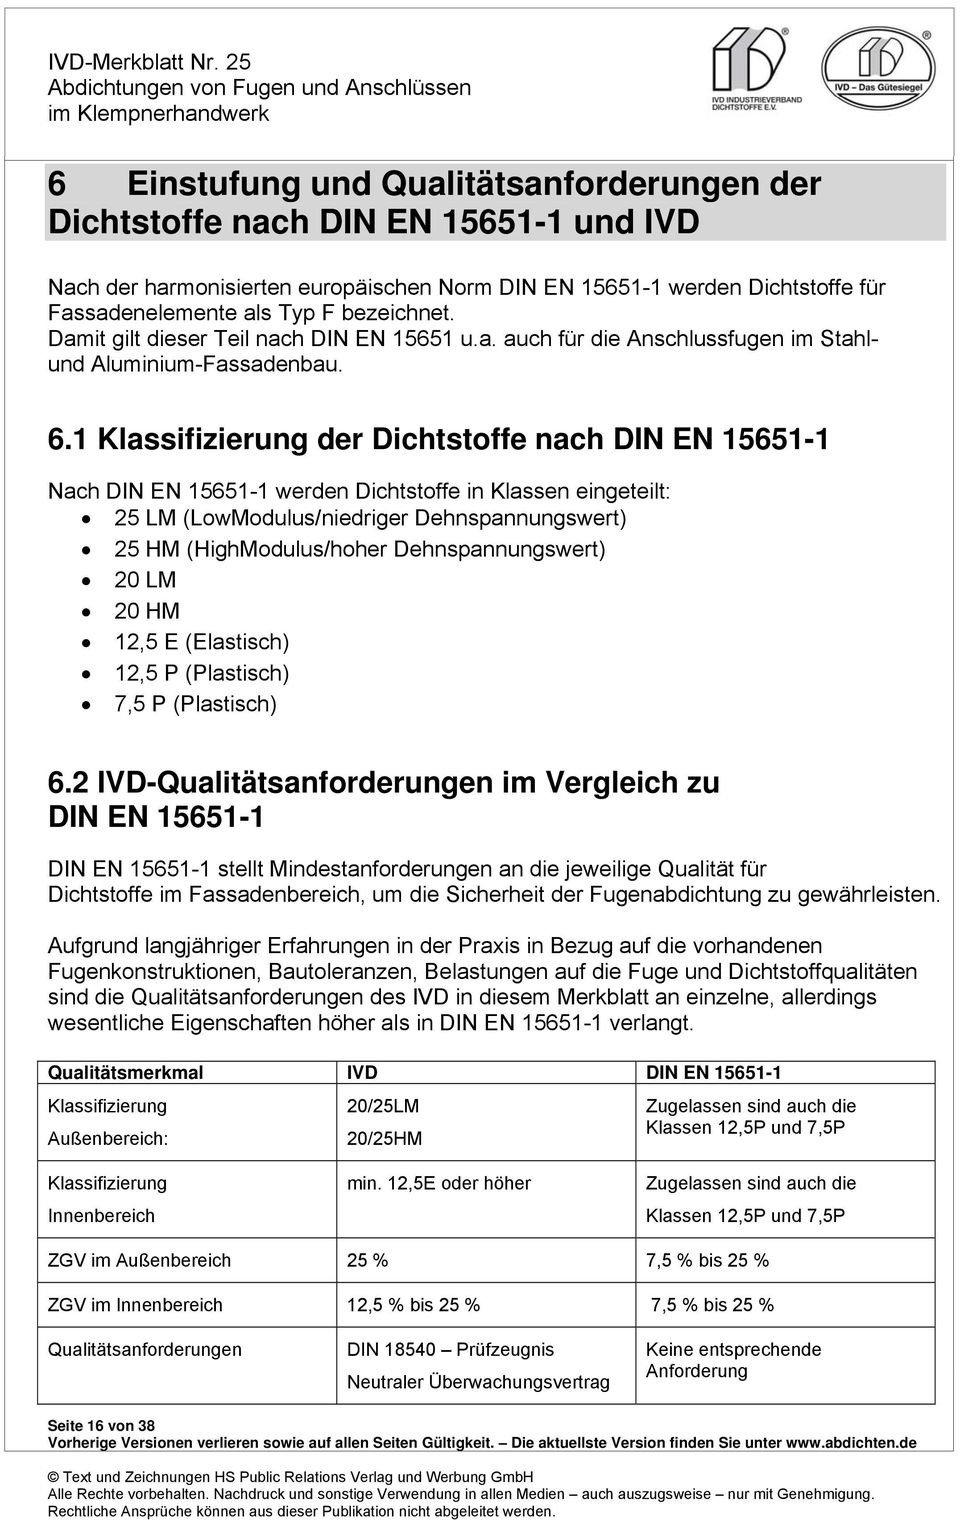 1 Klassifizierung der Dichtstoffe nach DIN EN 15651-1 Nach DIN EN 15651-1 werden Dichtstoffe in Klassen eingeteilt: 25 LM (LowModulus/niedriger Dehnspannungswert) 25 HM (HighModulus/hoher